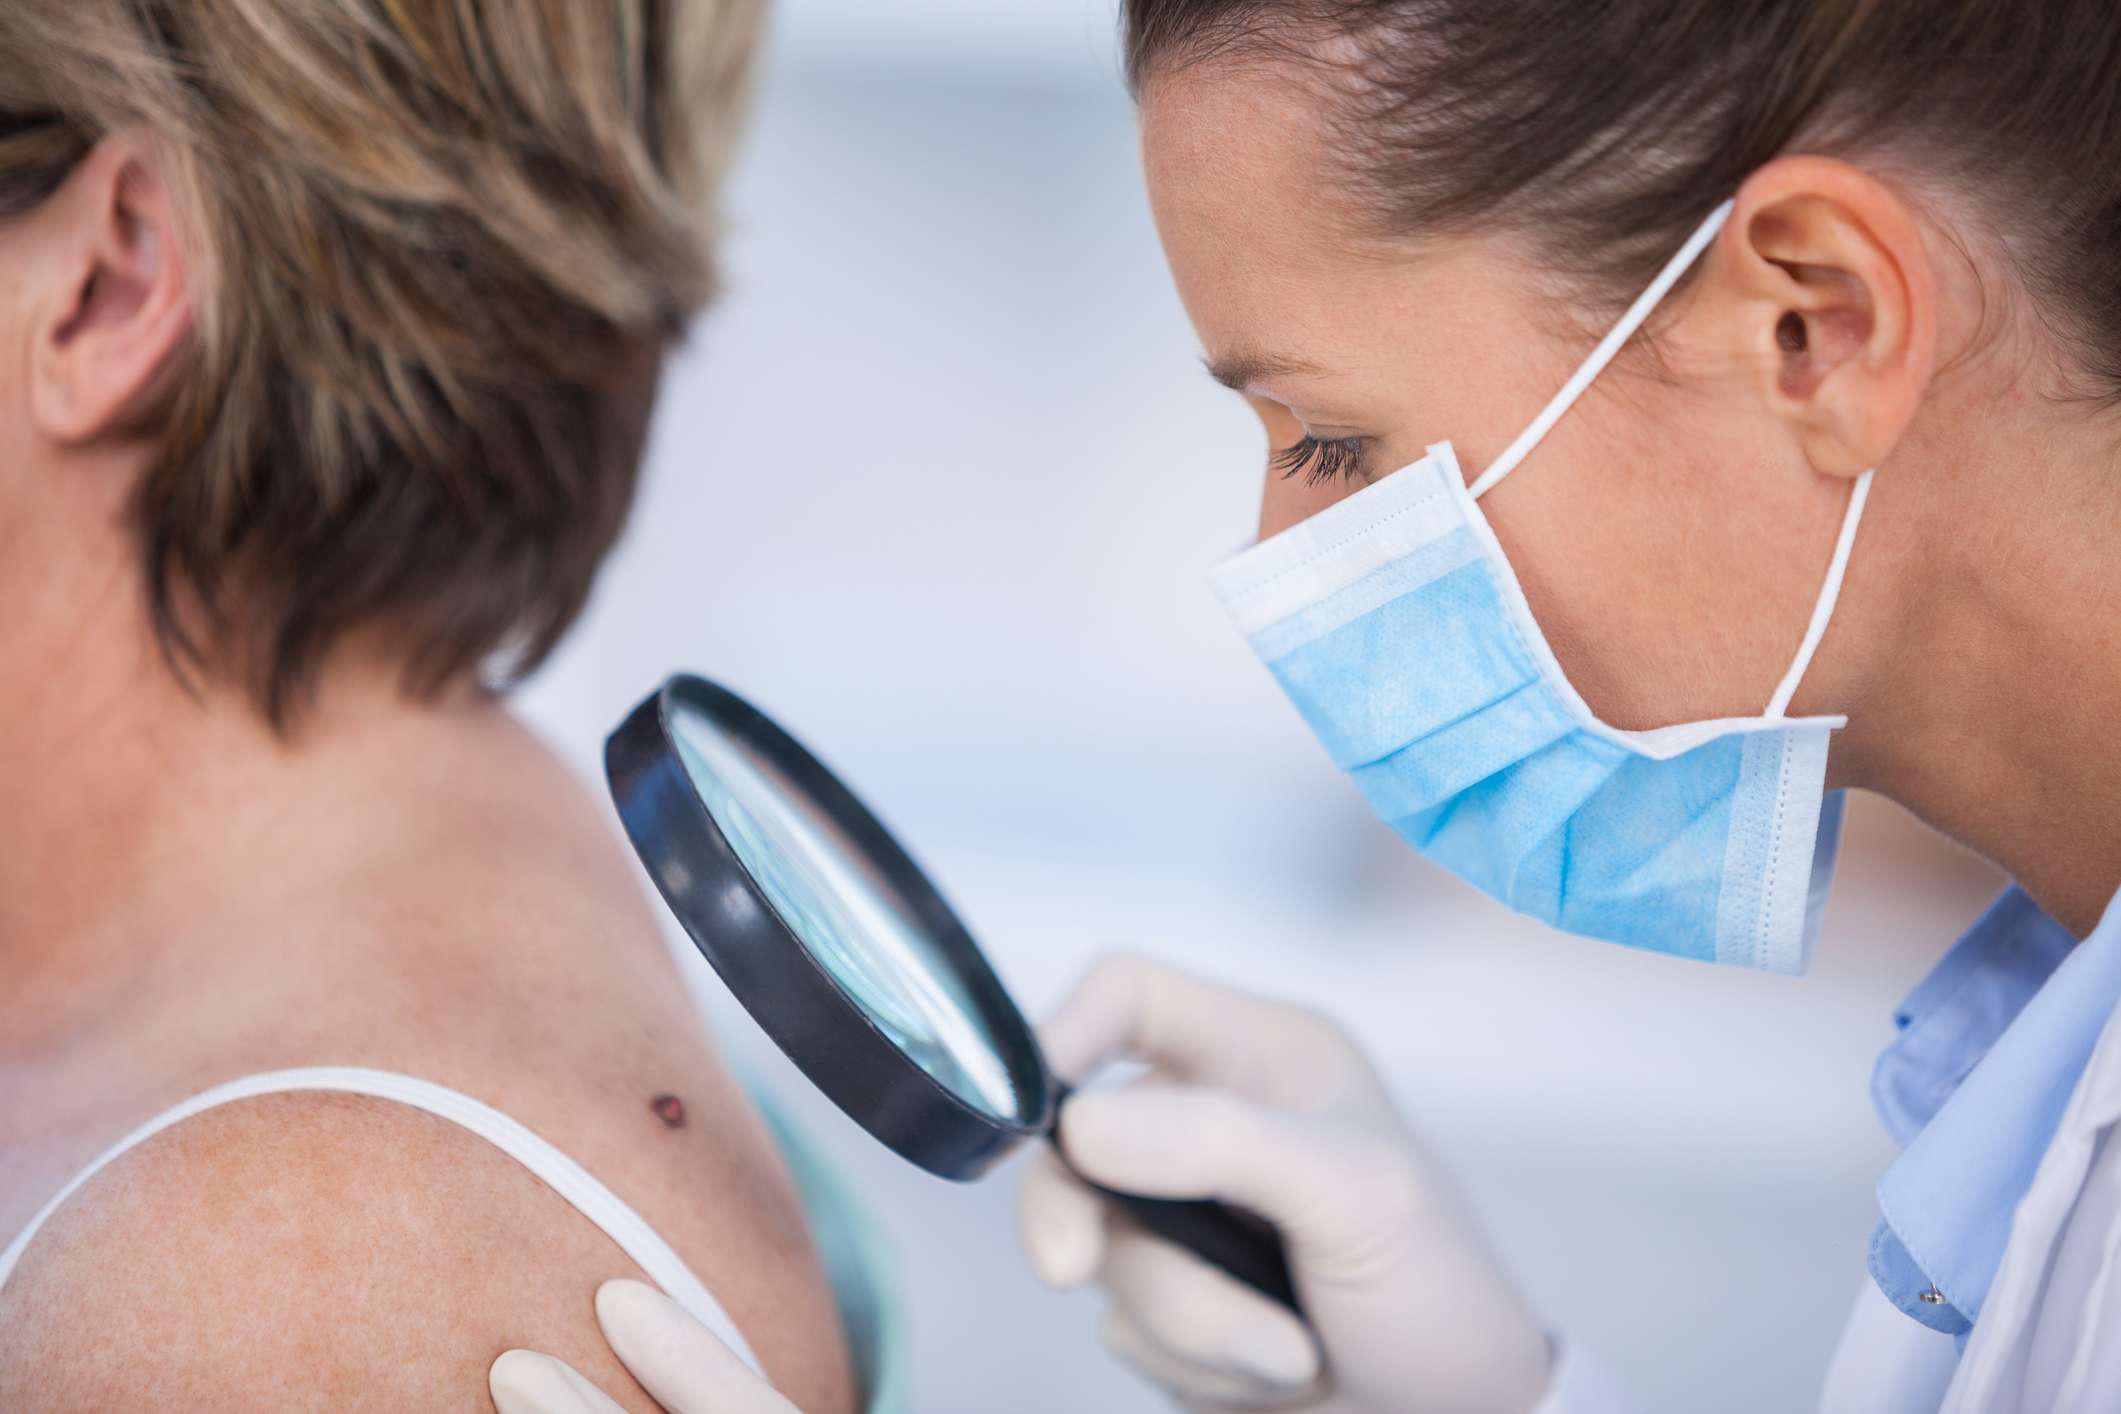 El riesgo de padecer un melanoma acrecienta en individuos menores de 40 años, especialmente en las mujeres. Foto: Cortesía